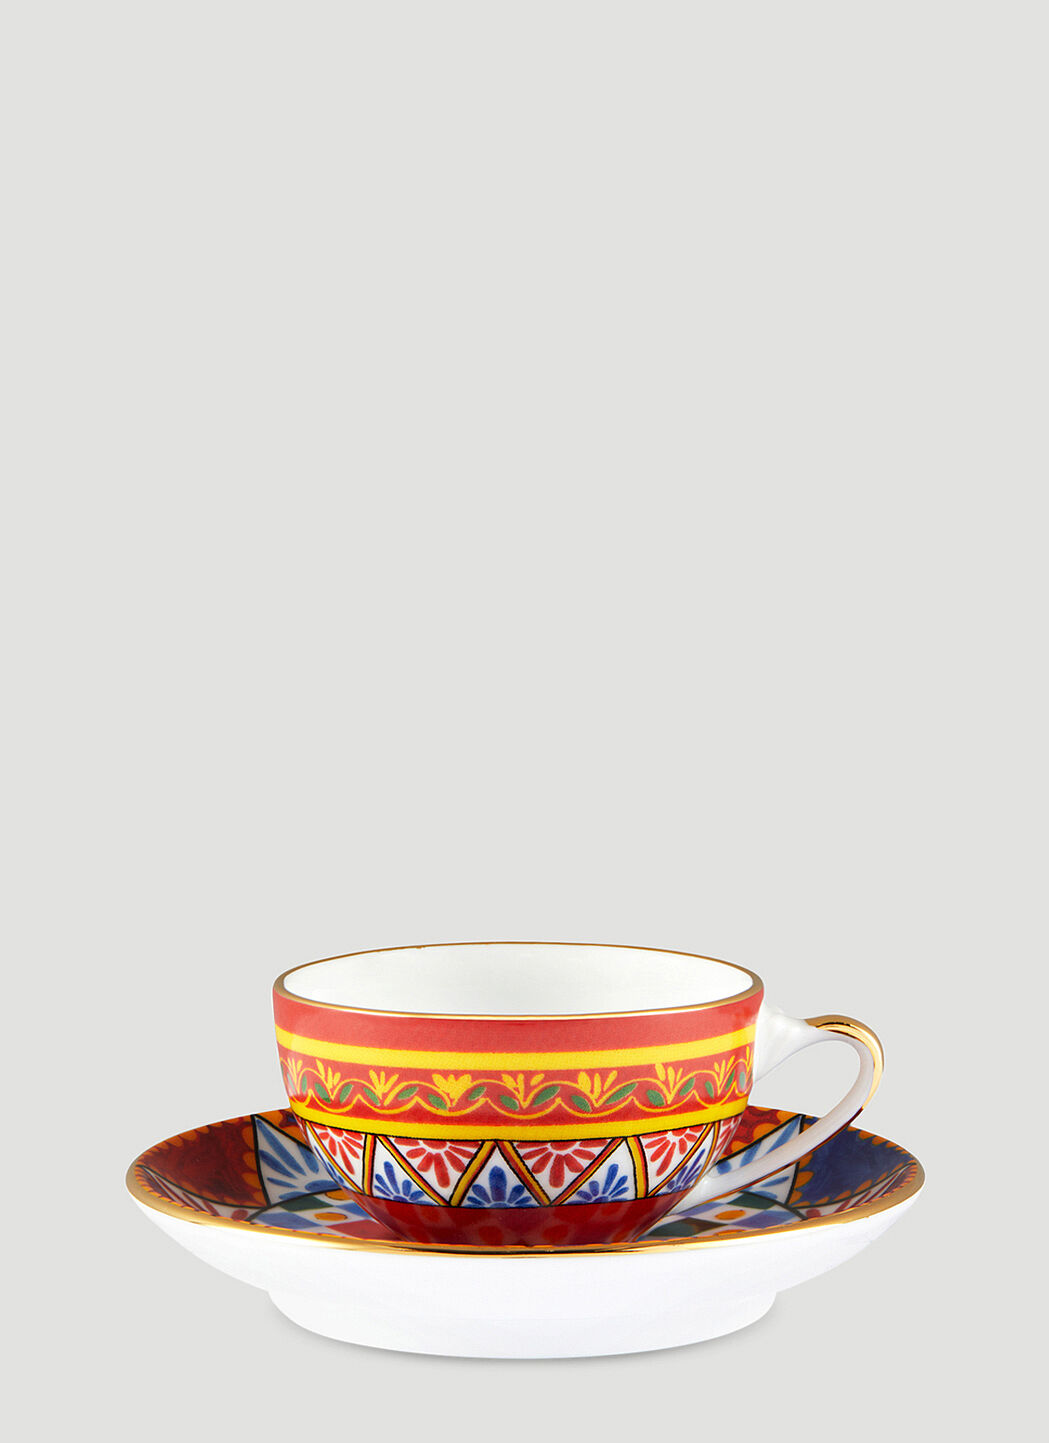 Seletti 'Carretto Siciliano' espresso set Multicolour wps0691134